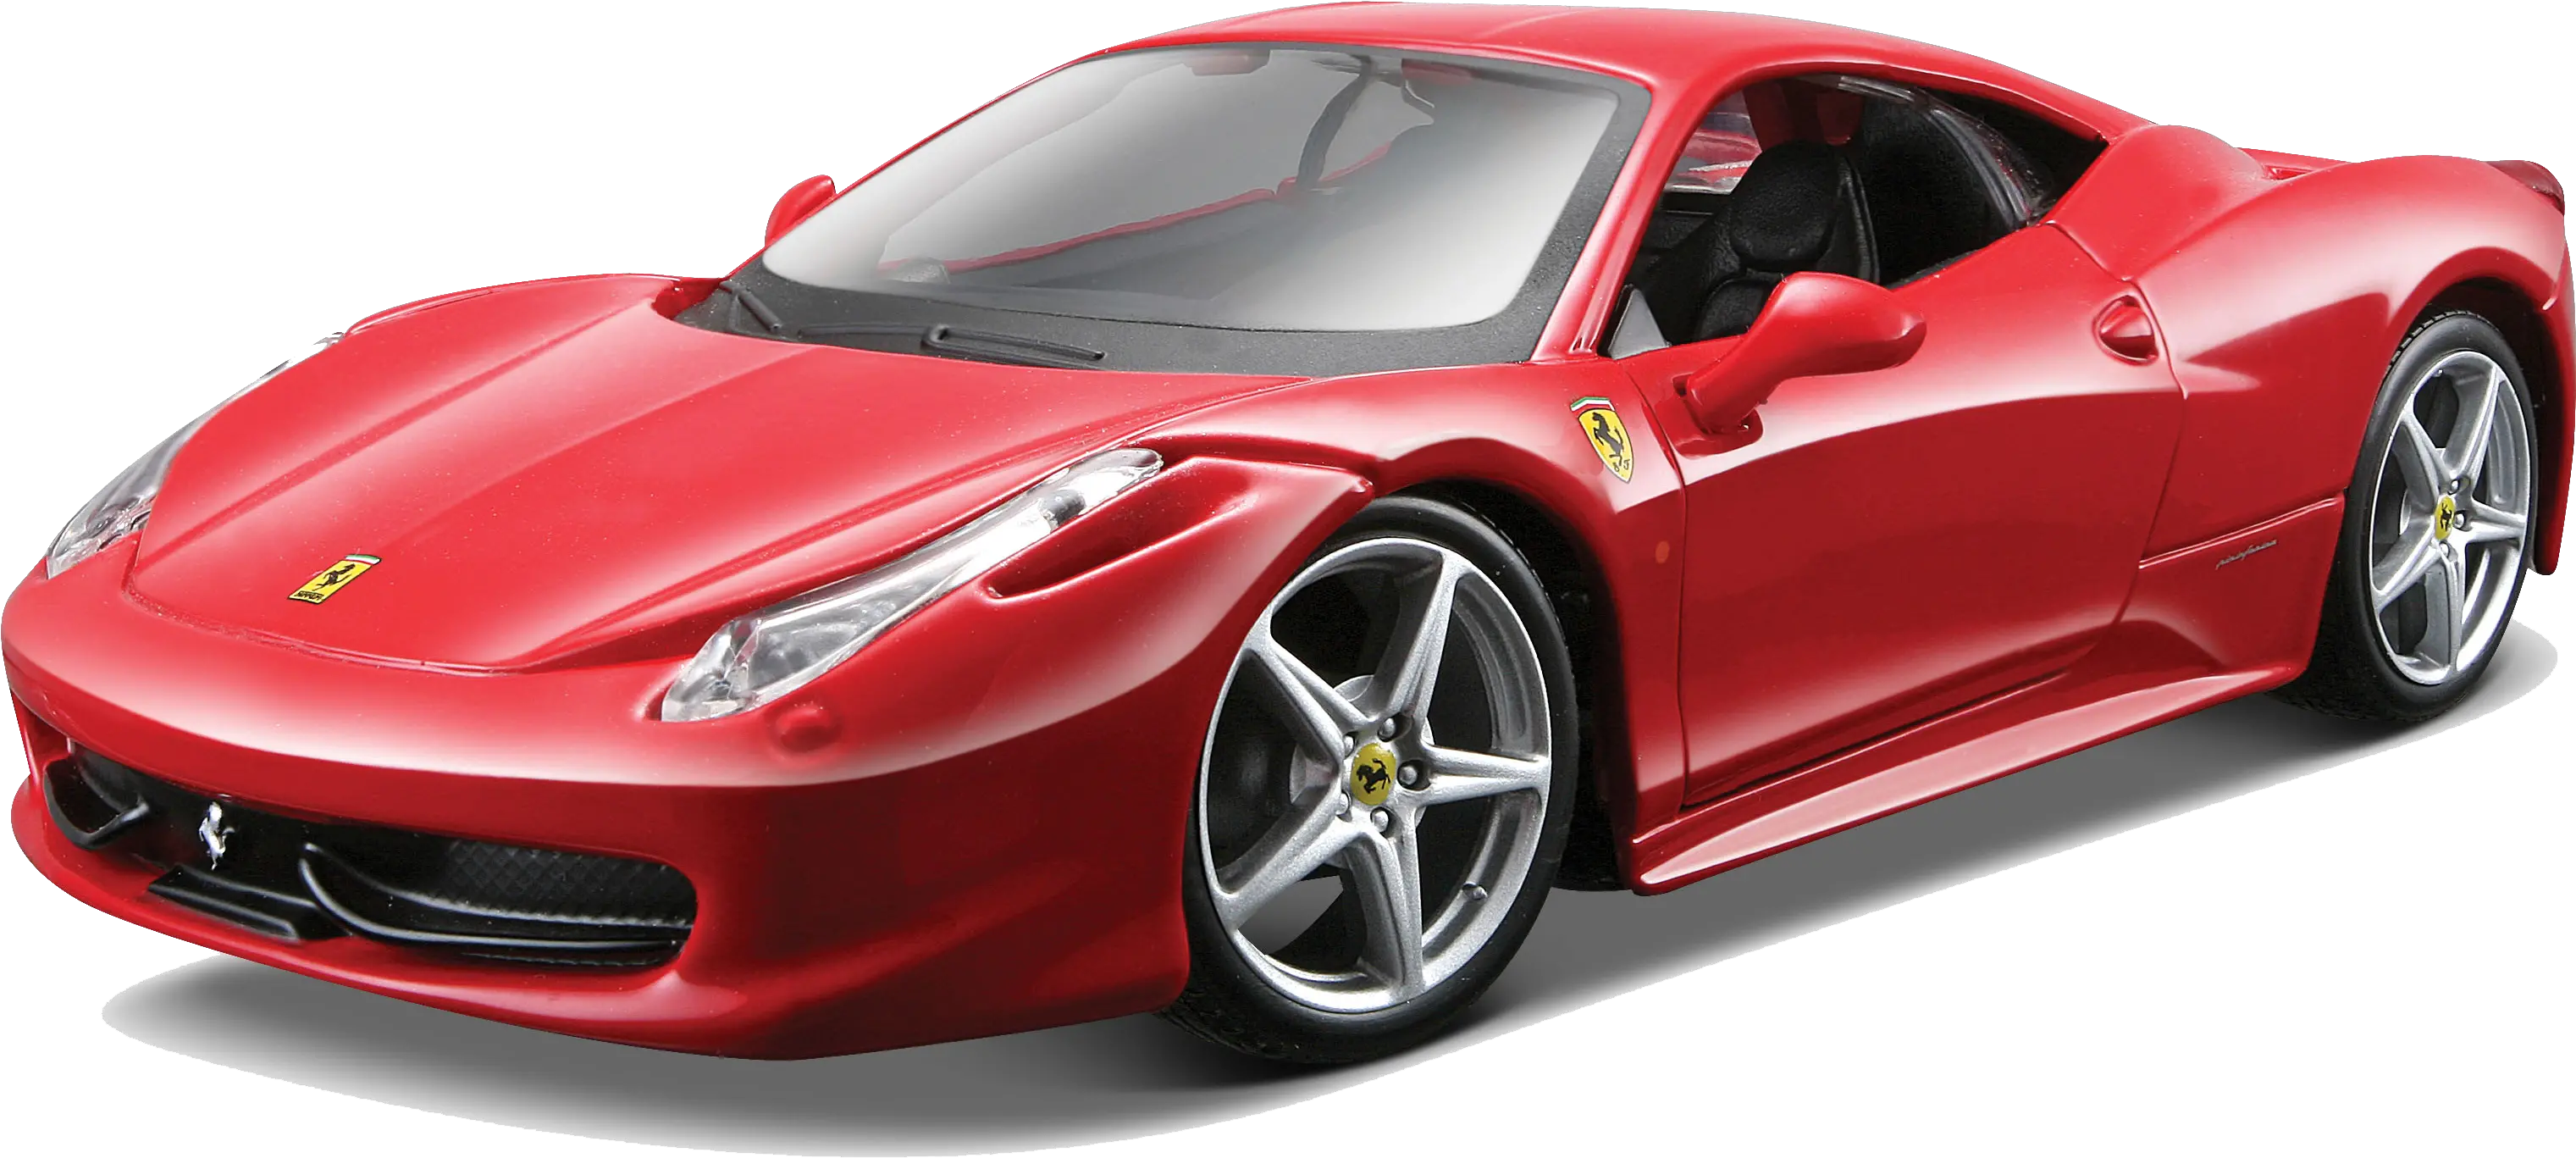 Ferrari Png Transparent Images Sports Car Png Ferrari Png